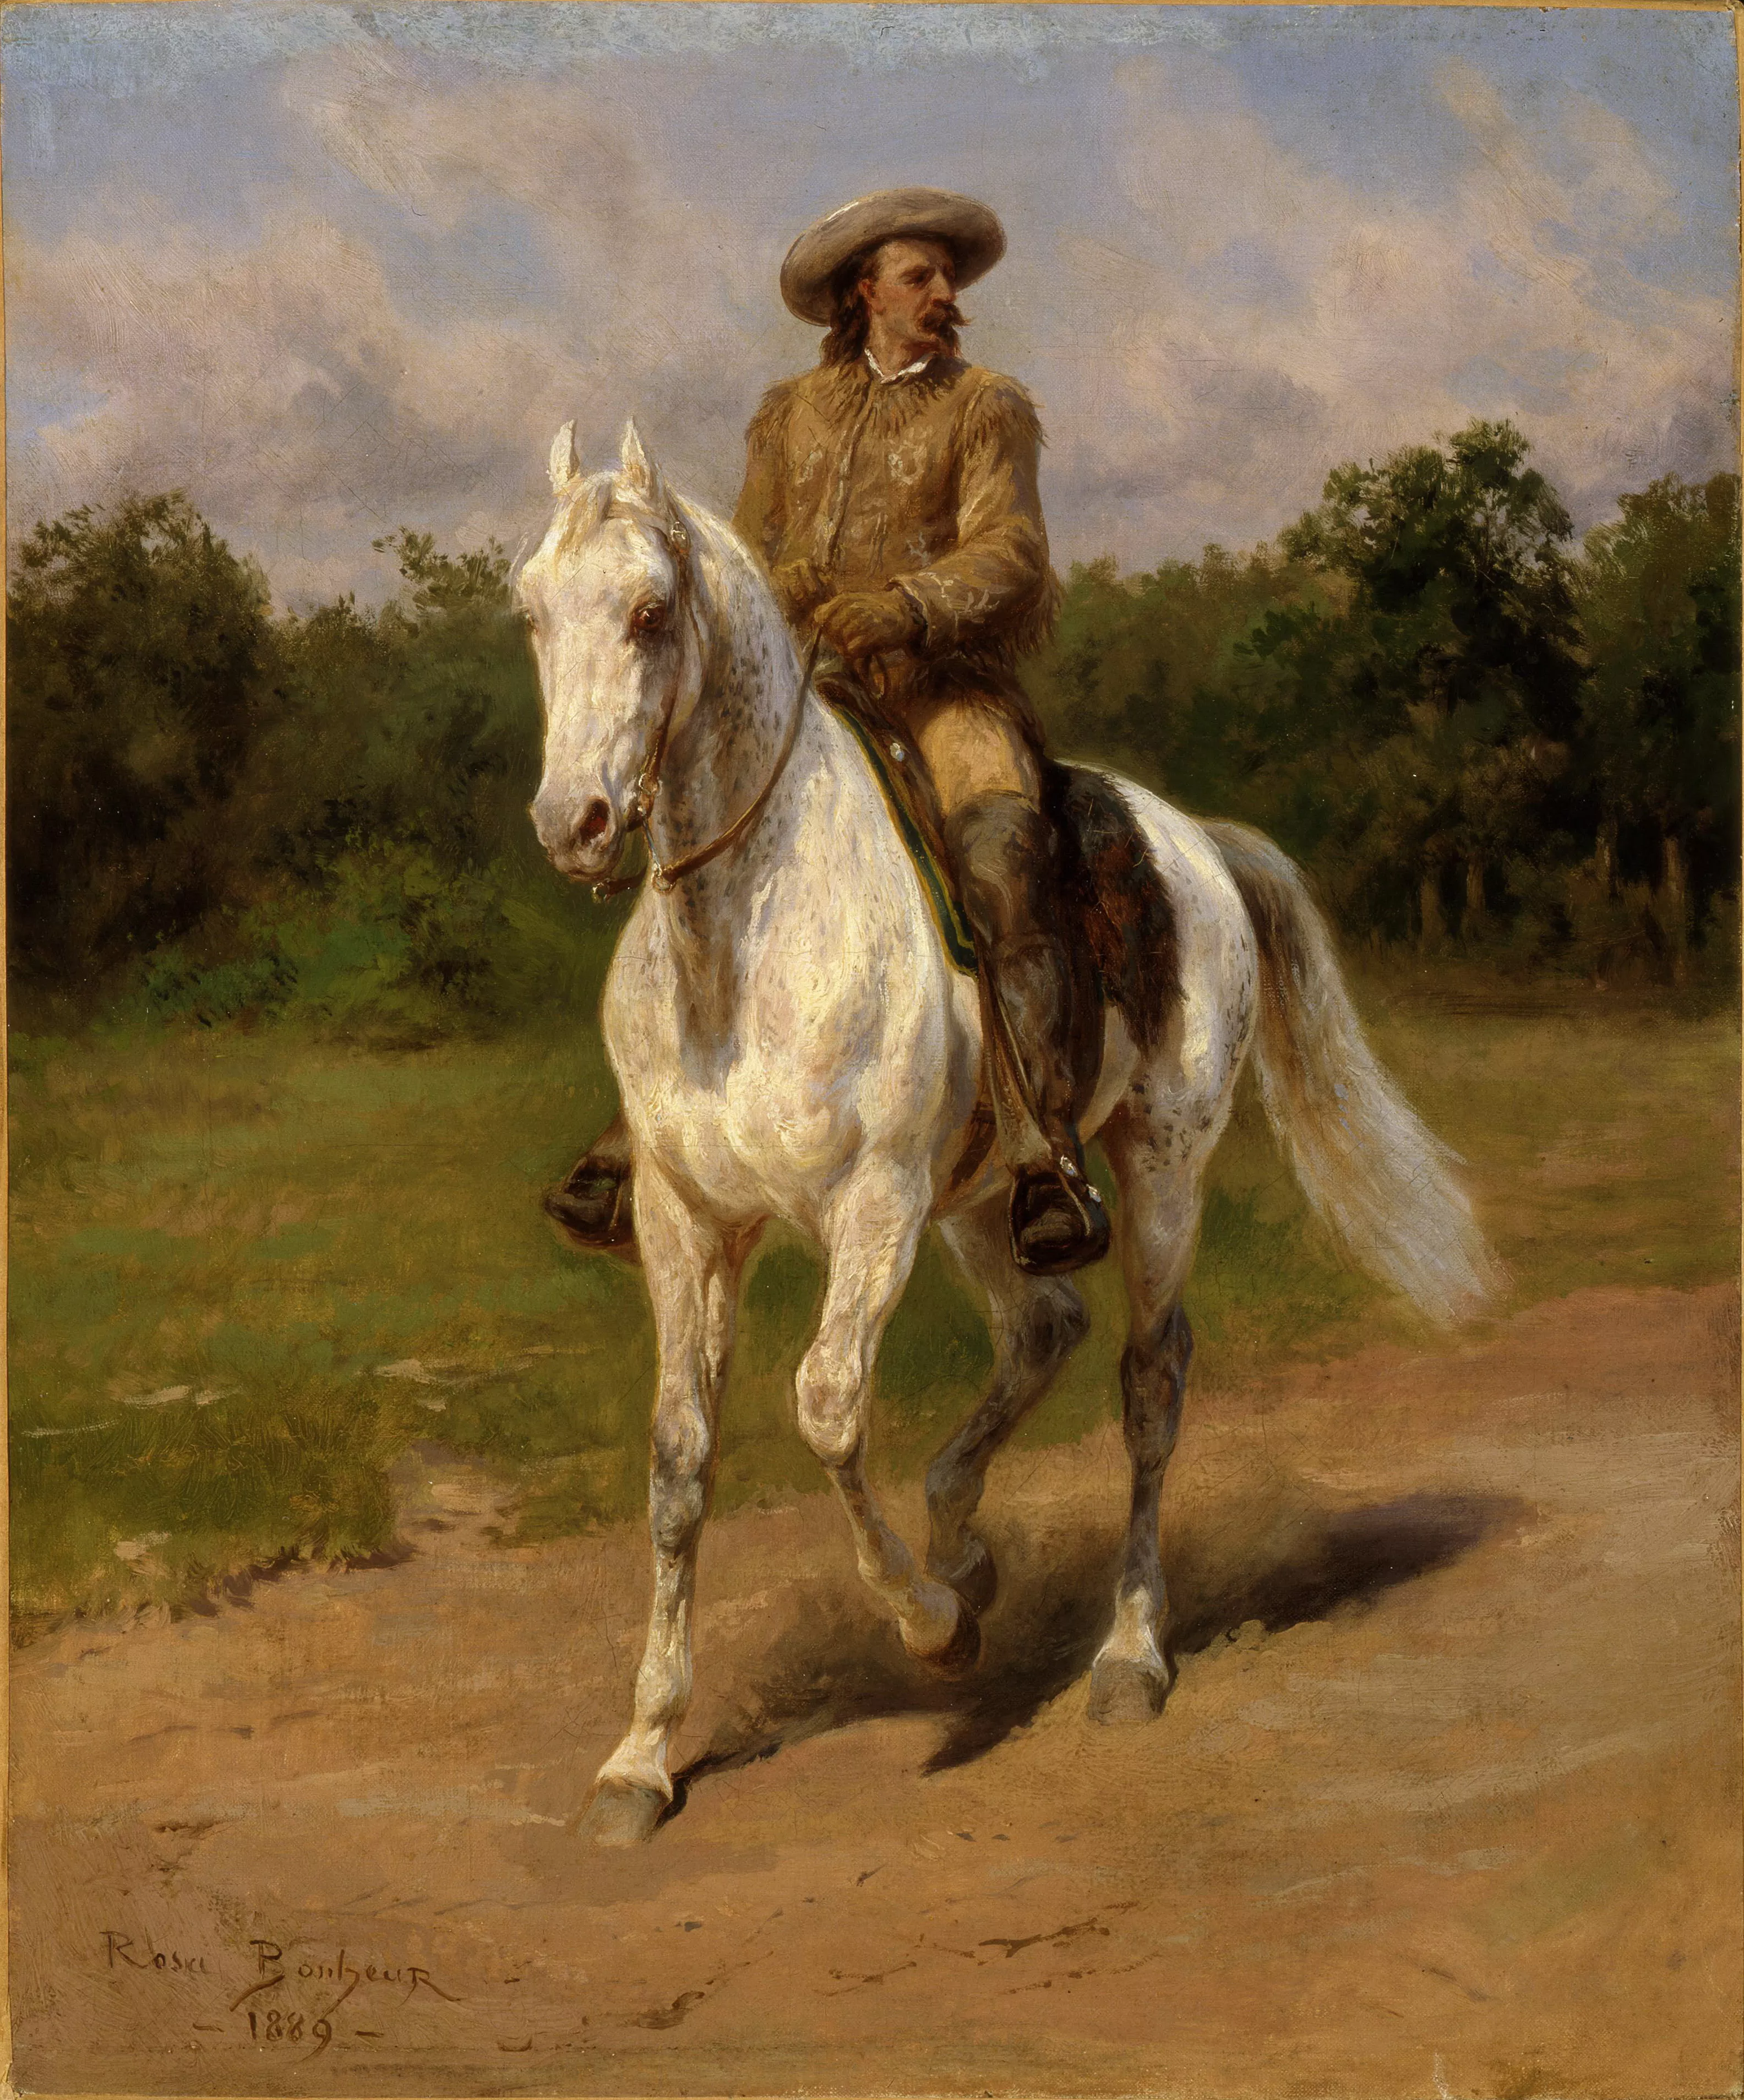 Retrat de Bill Cody (Rosa Bonheur, 1889)